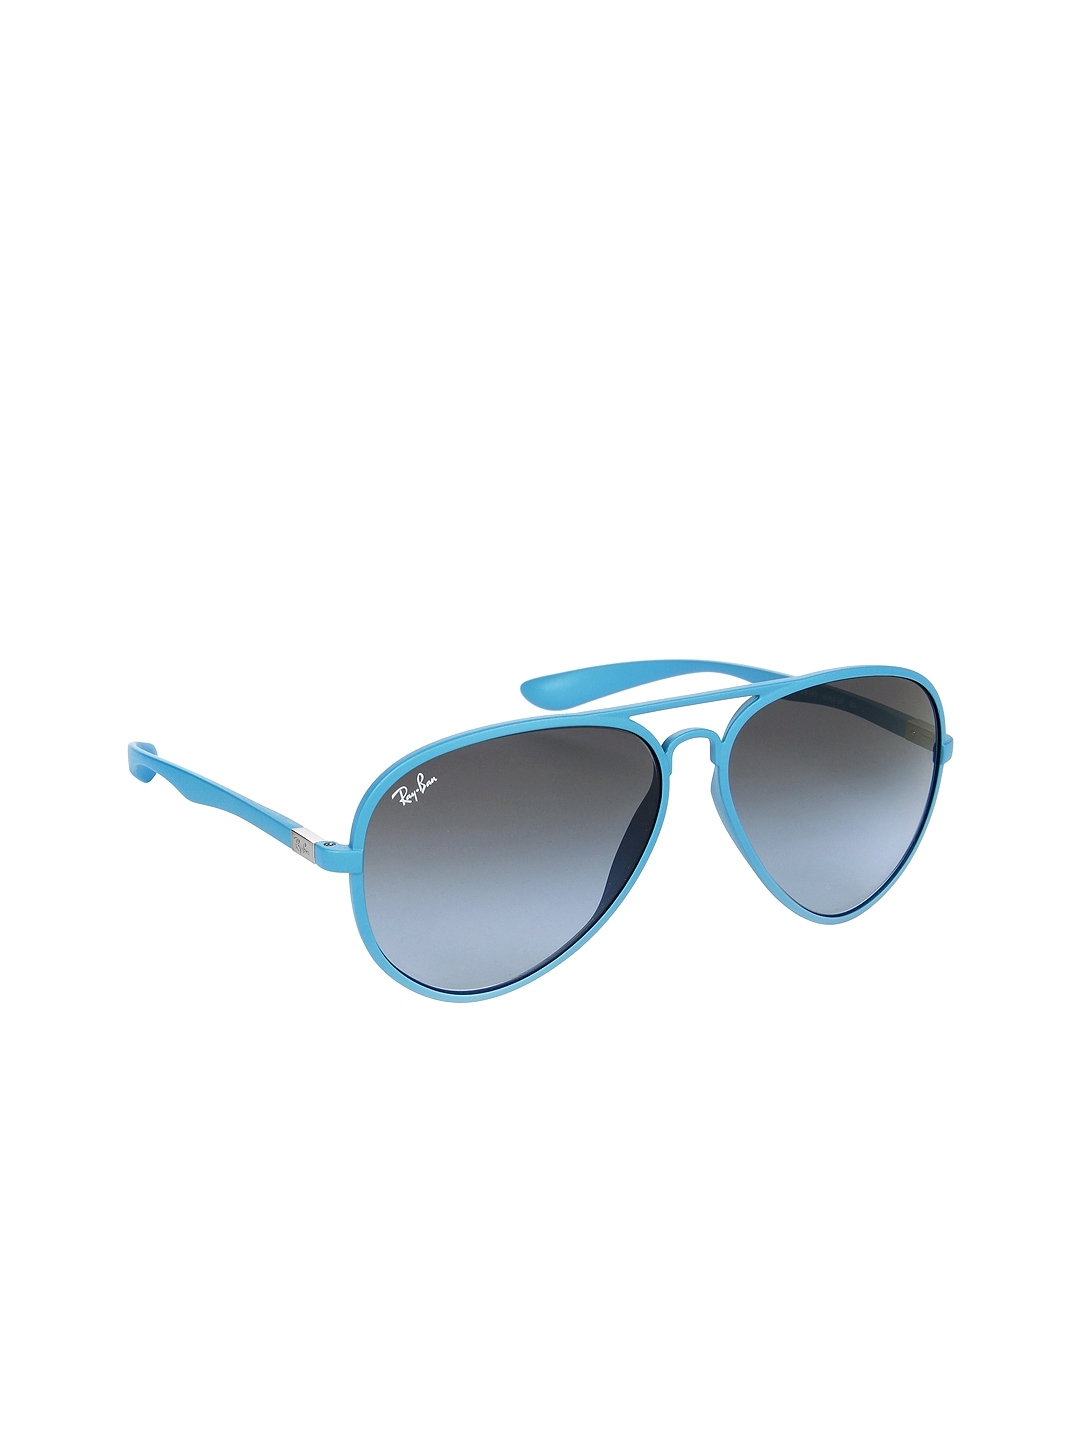 Buy Ray Ban Men Aviator Sunglasses 0rb4180 Sunglasses For Men 255627 